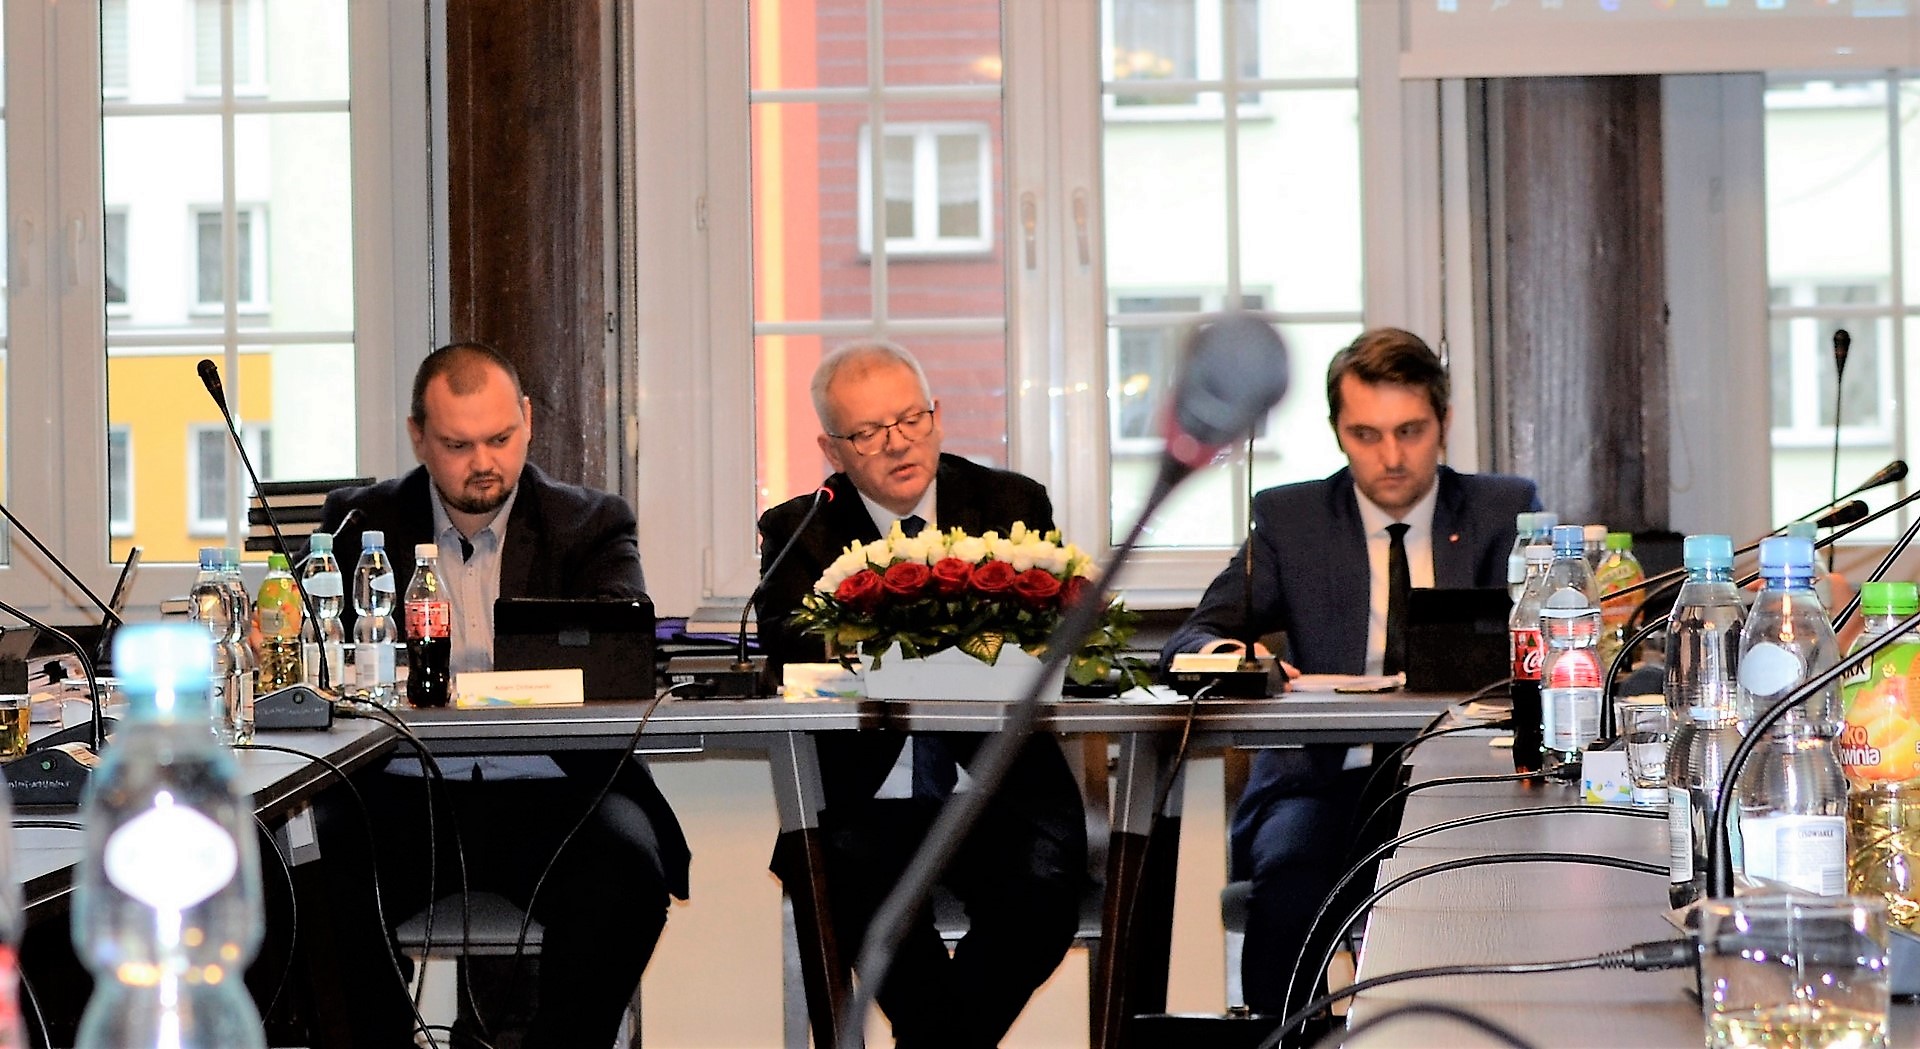 Zdalne sesje rad gmin możliwe. Sejm w piątek zajmie się ustawą